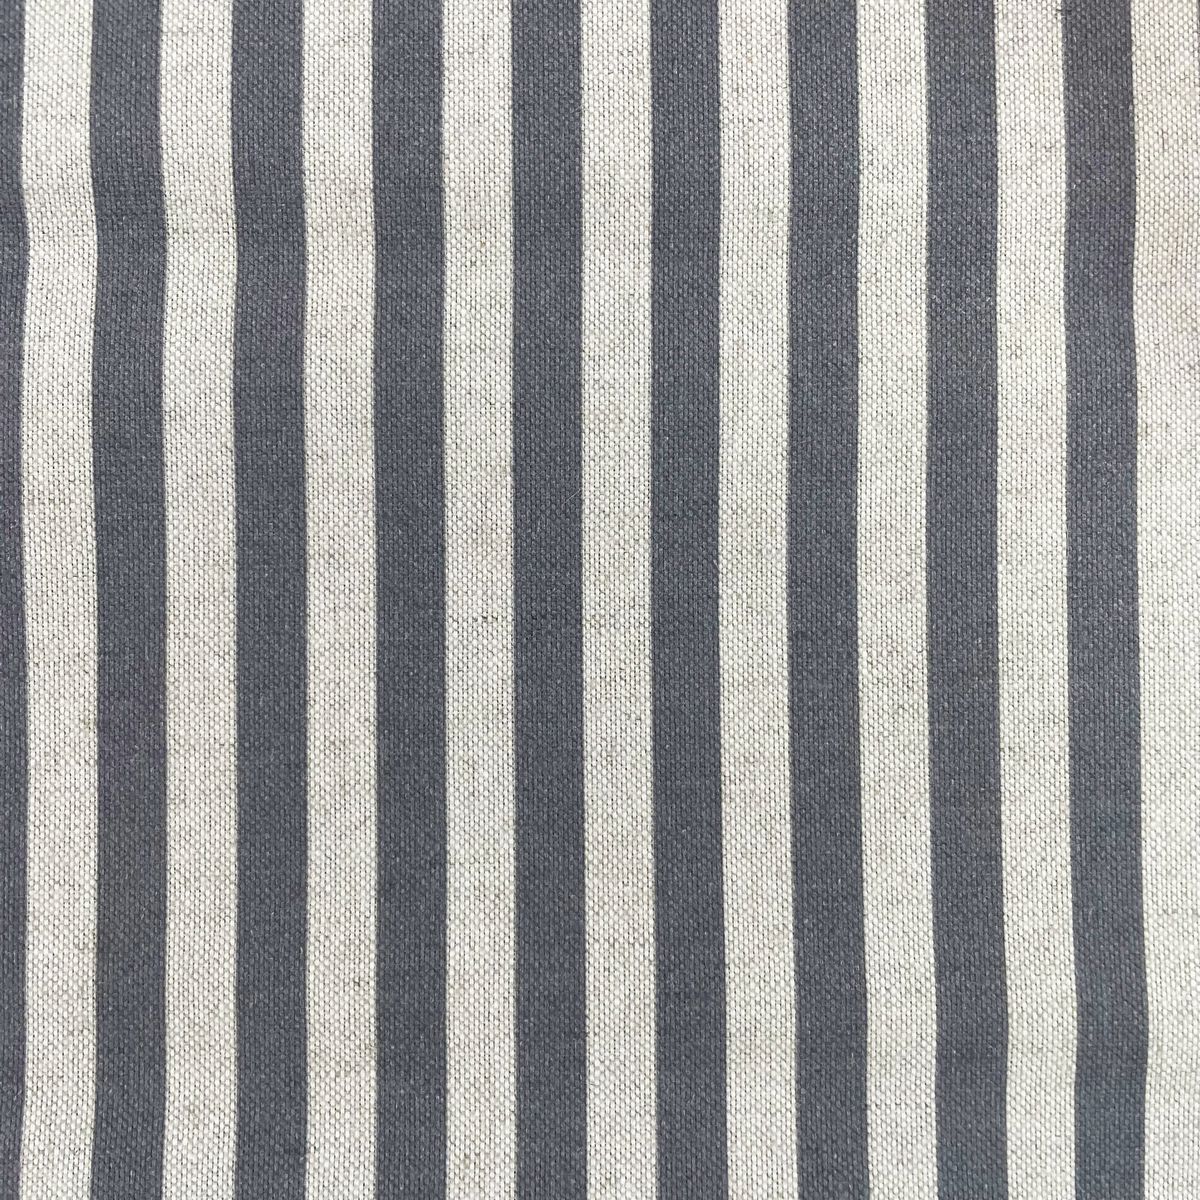 Greenlea Dove Grey Fabric by Chatham Glyn